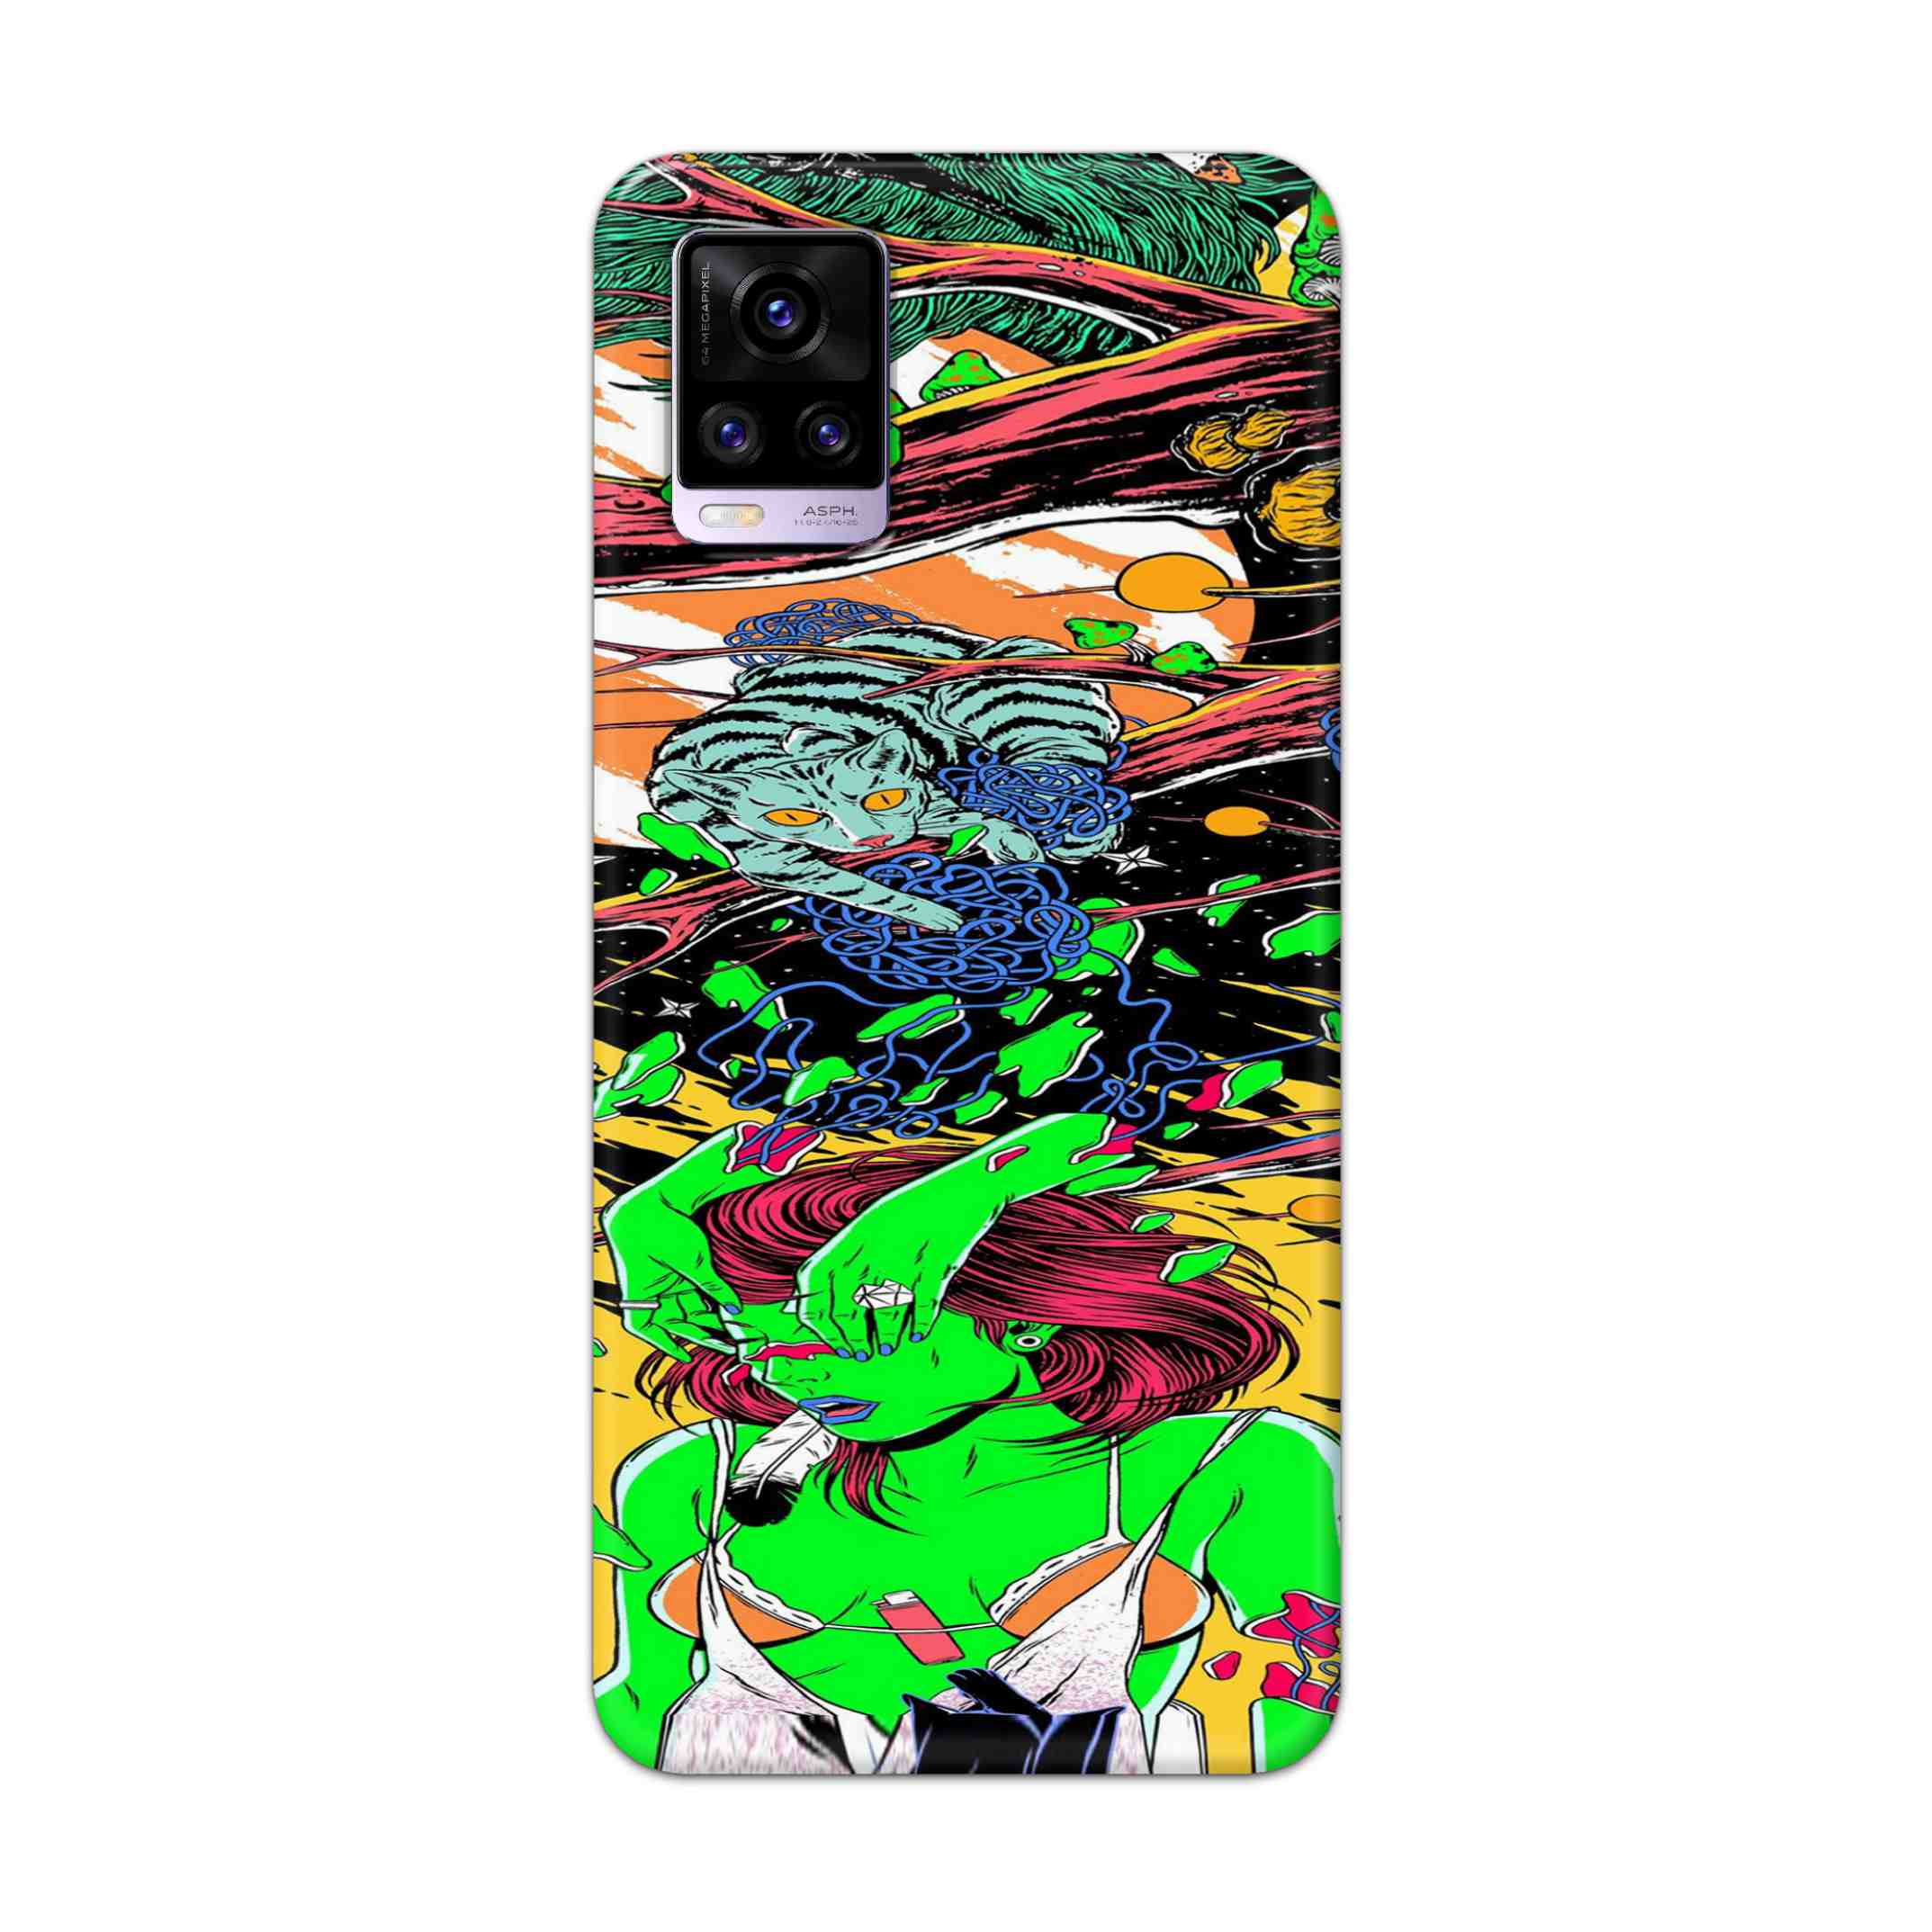 Buy Green Girl Art Hard Back Mobile Phone Case Cover For Vivo V20 Online